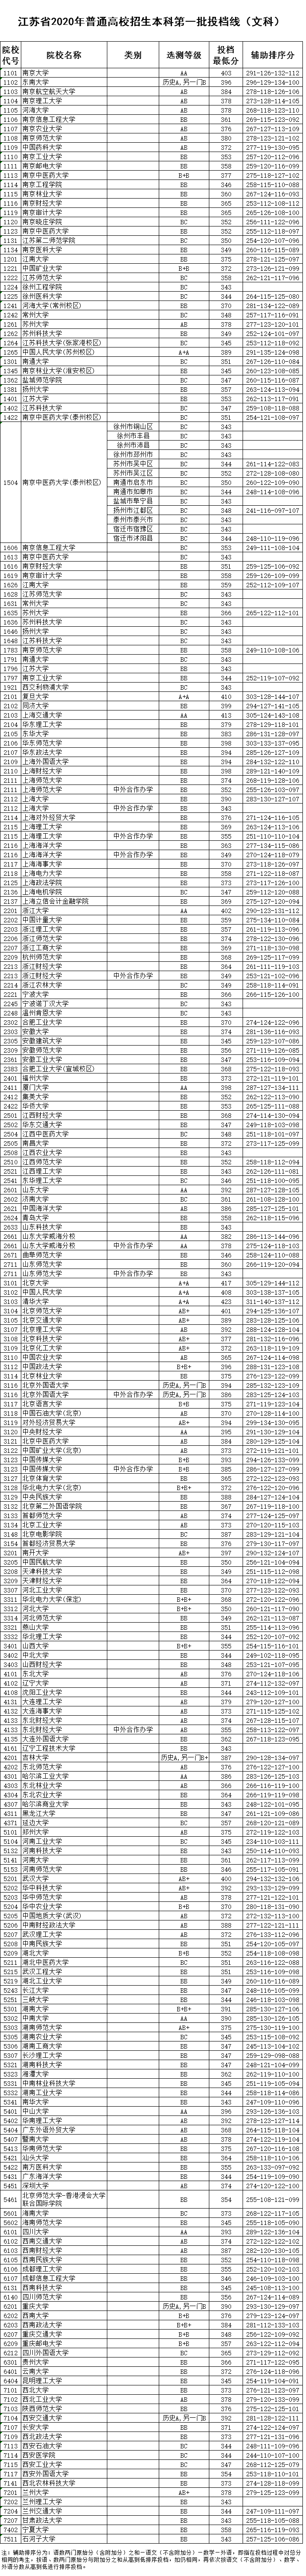 2020江苏高考一本批次院校投档分数线及院校代号一览表